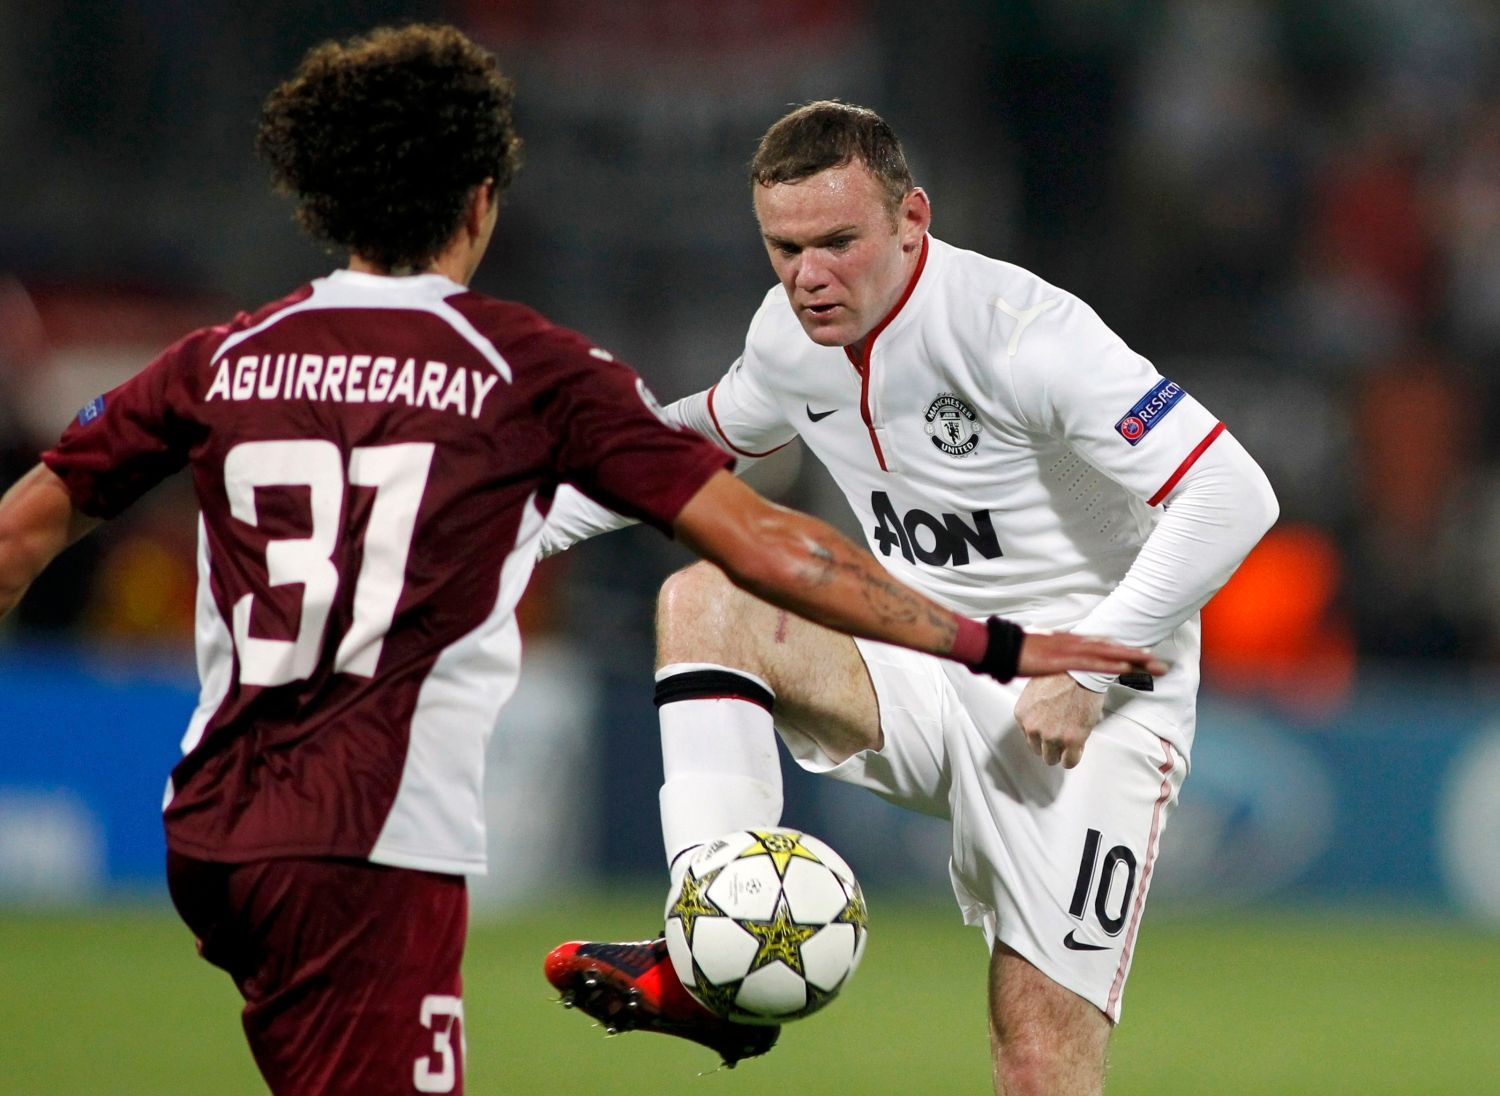 Fotbalista Manchesteru United Wayne Rooney v souboji s Matiasem Aguirregarayem z Kluže v utkání Ligy mistrů 2012/13.